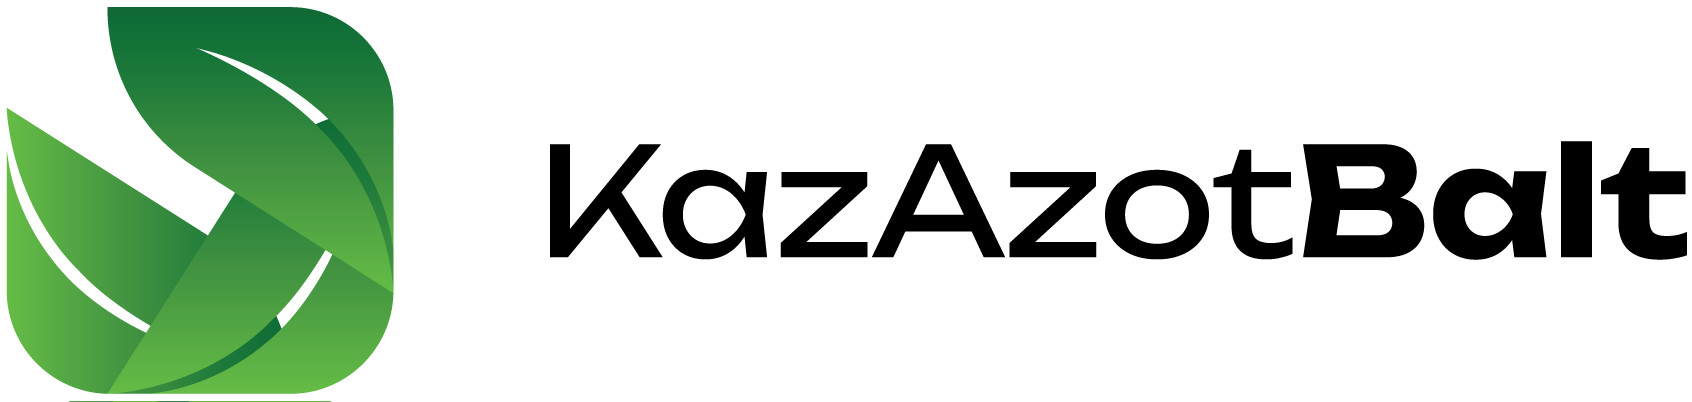 KAB-Logo-Black